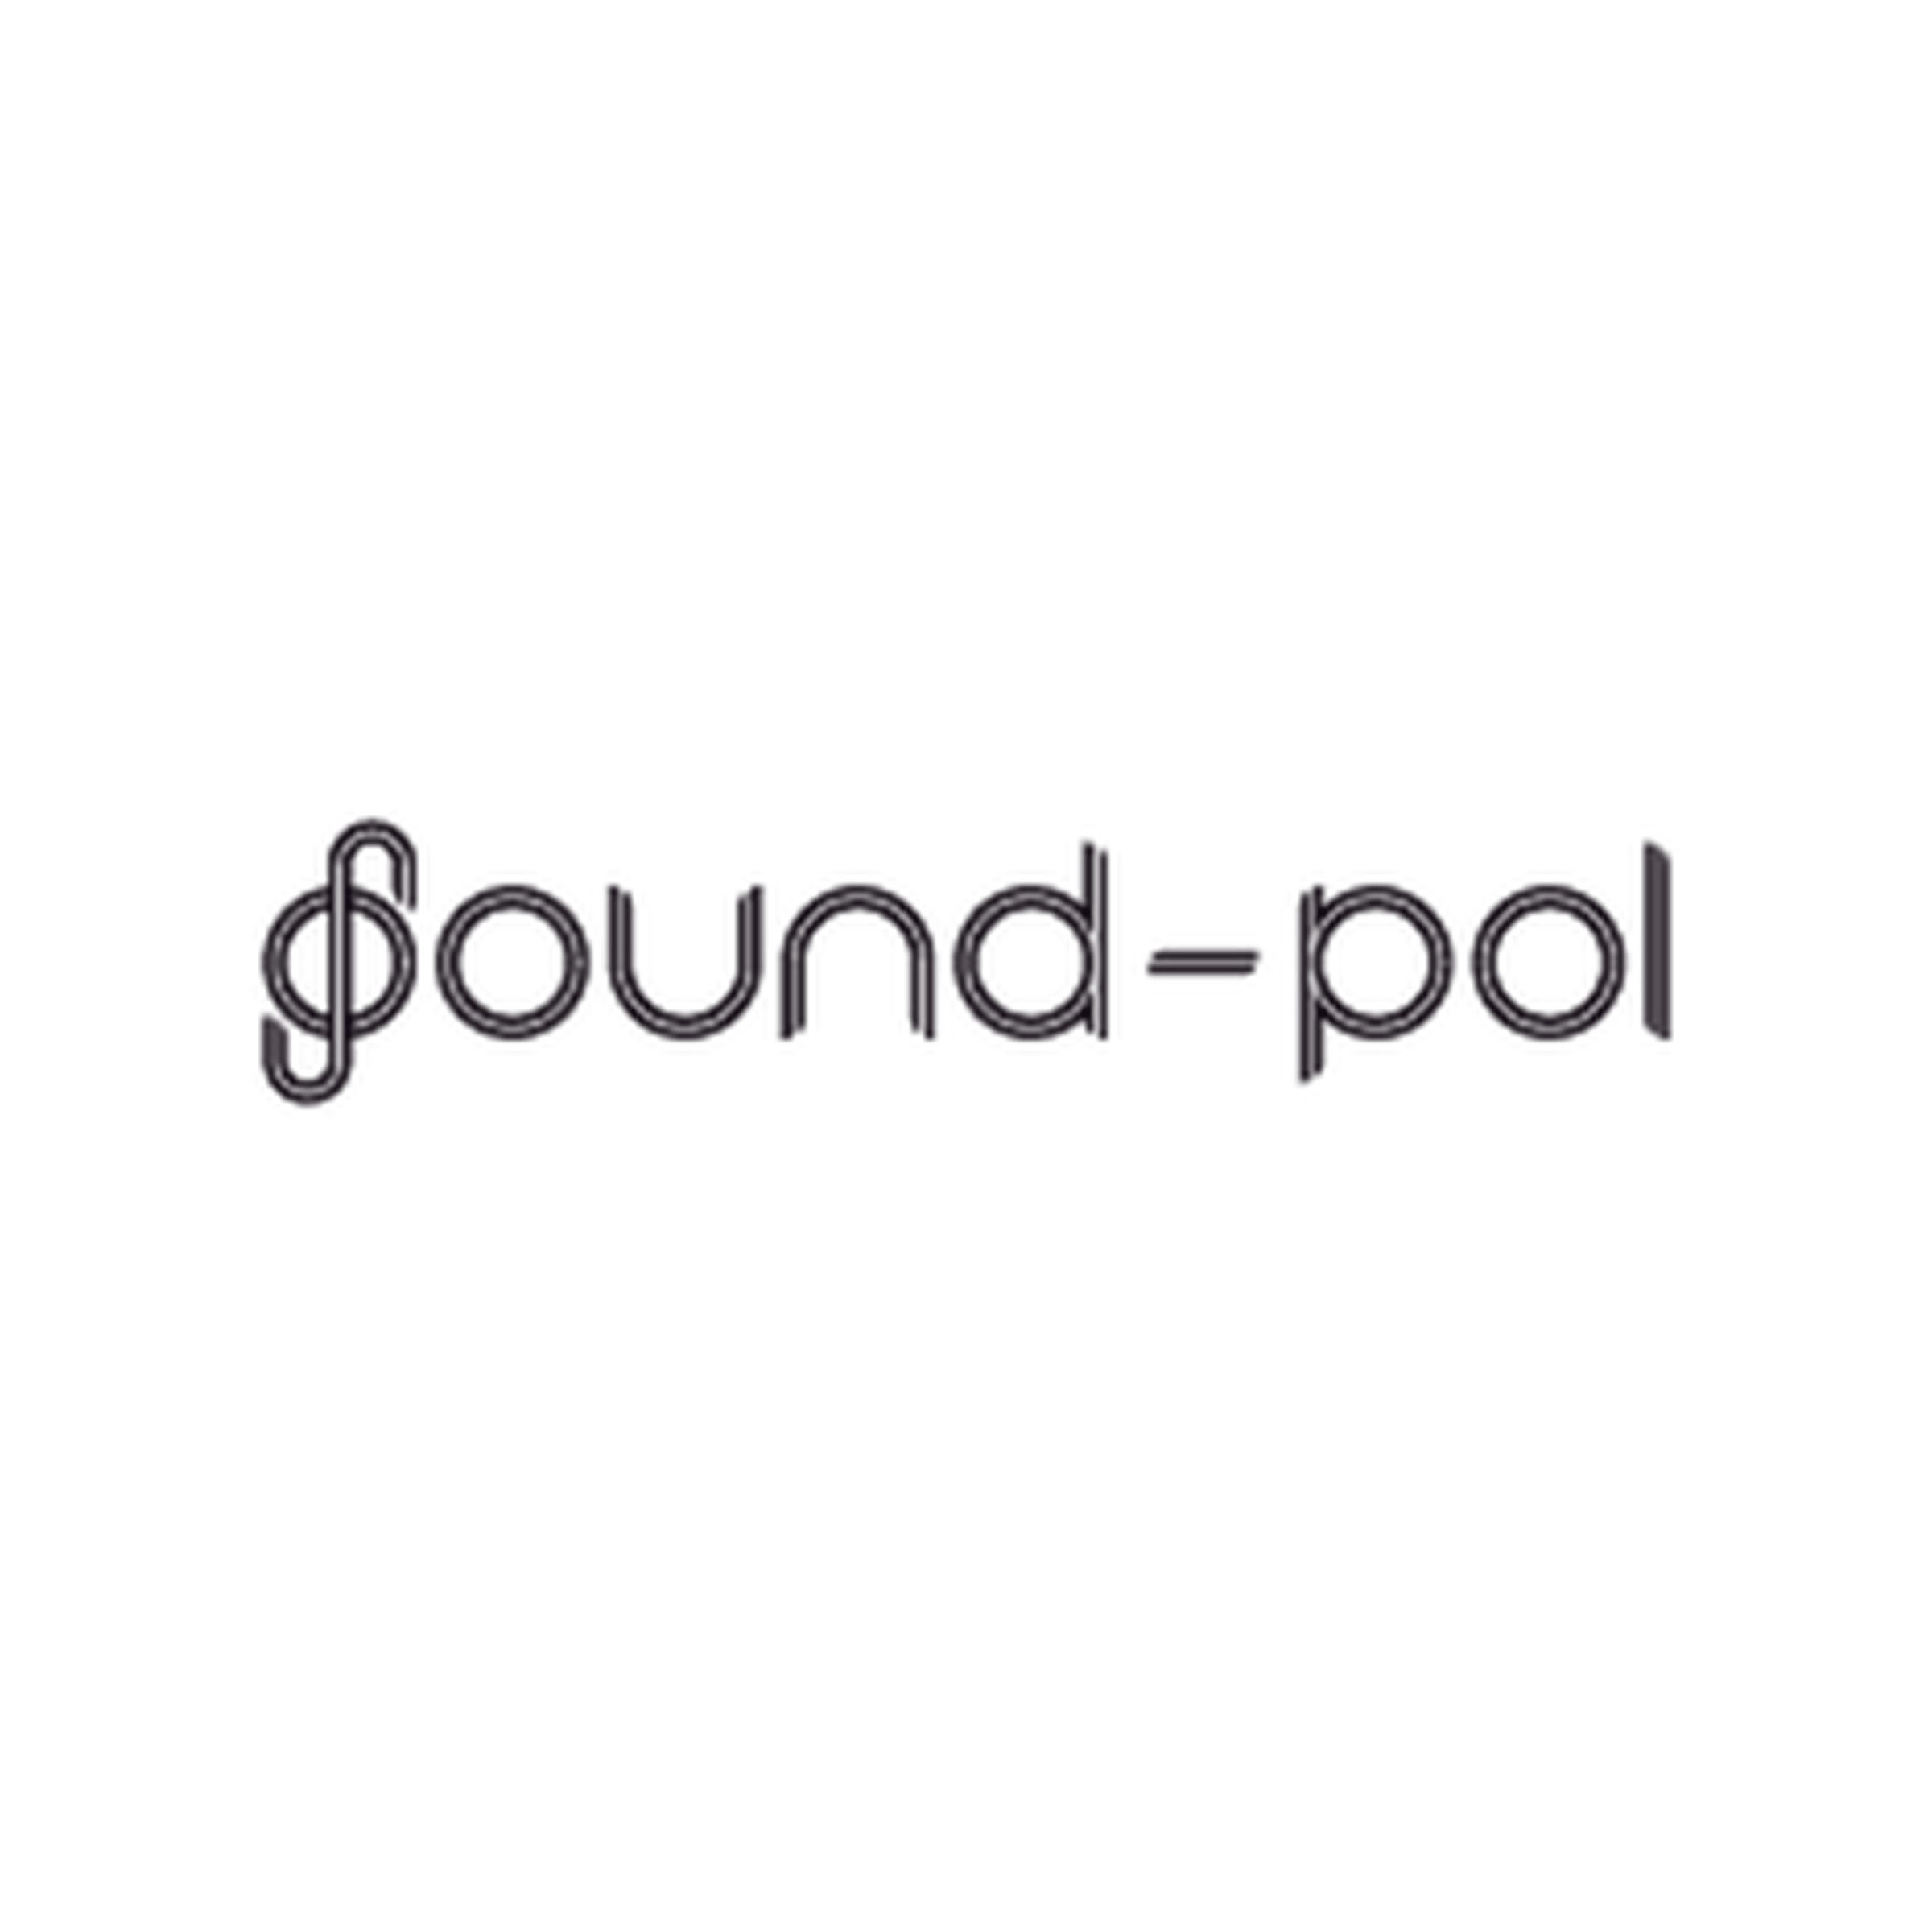 Sound-Pol